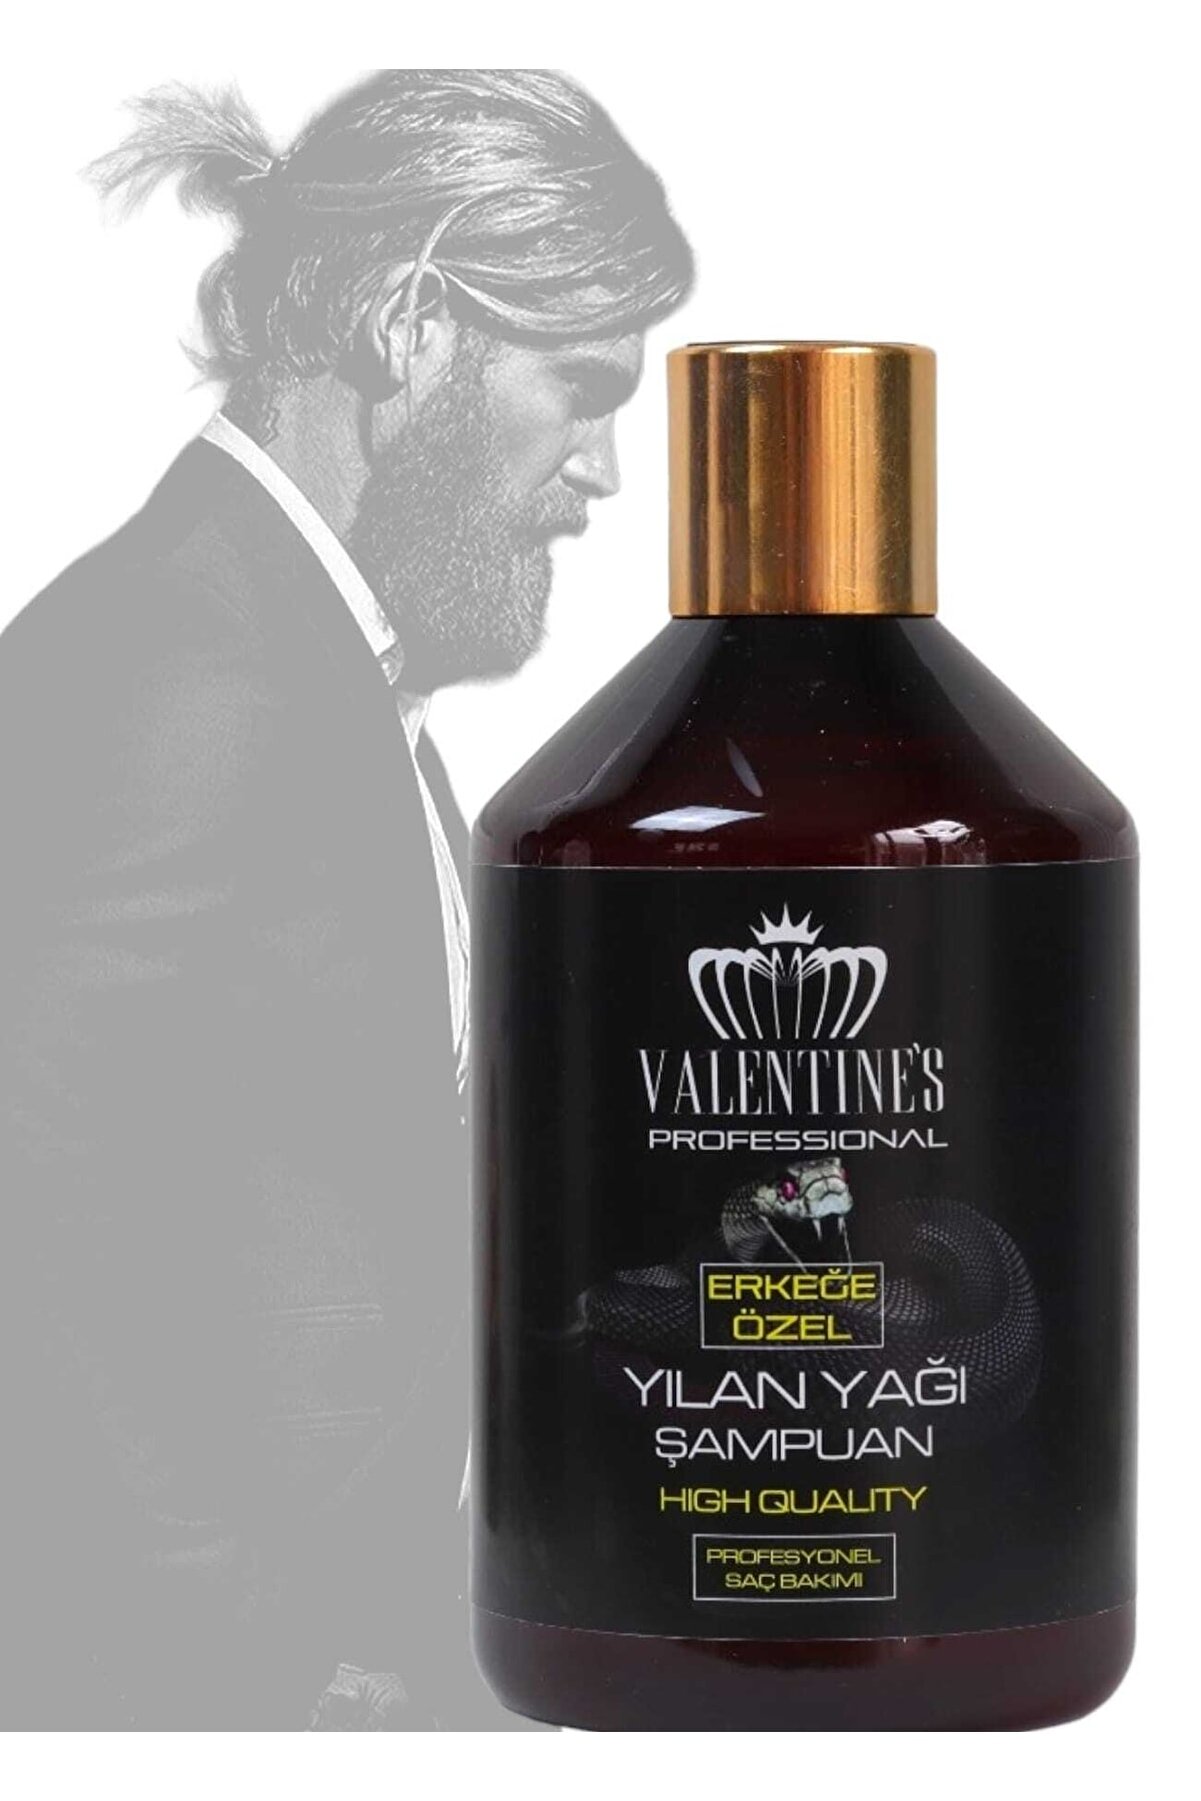 VALENTINES PROFESSIONAL Erkeğe Özel 19 Doğal Yağ Özü İçeren Yılan Yağı Mucize Bakım Şampuanı